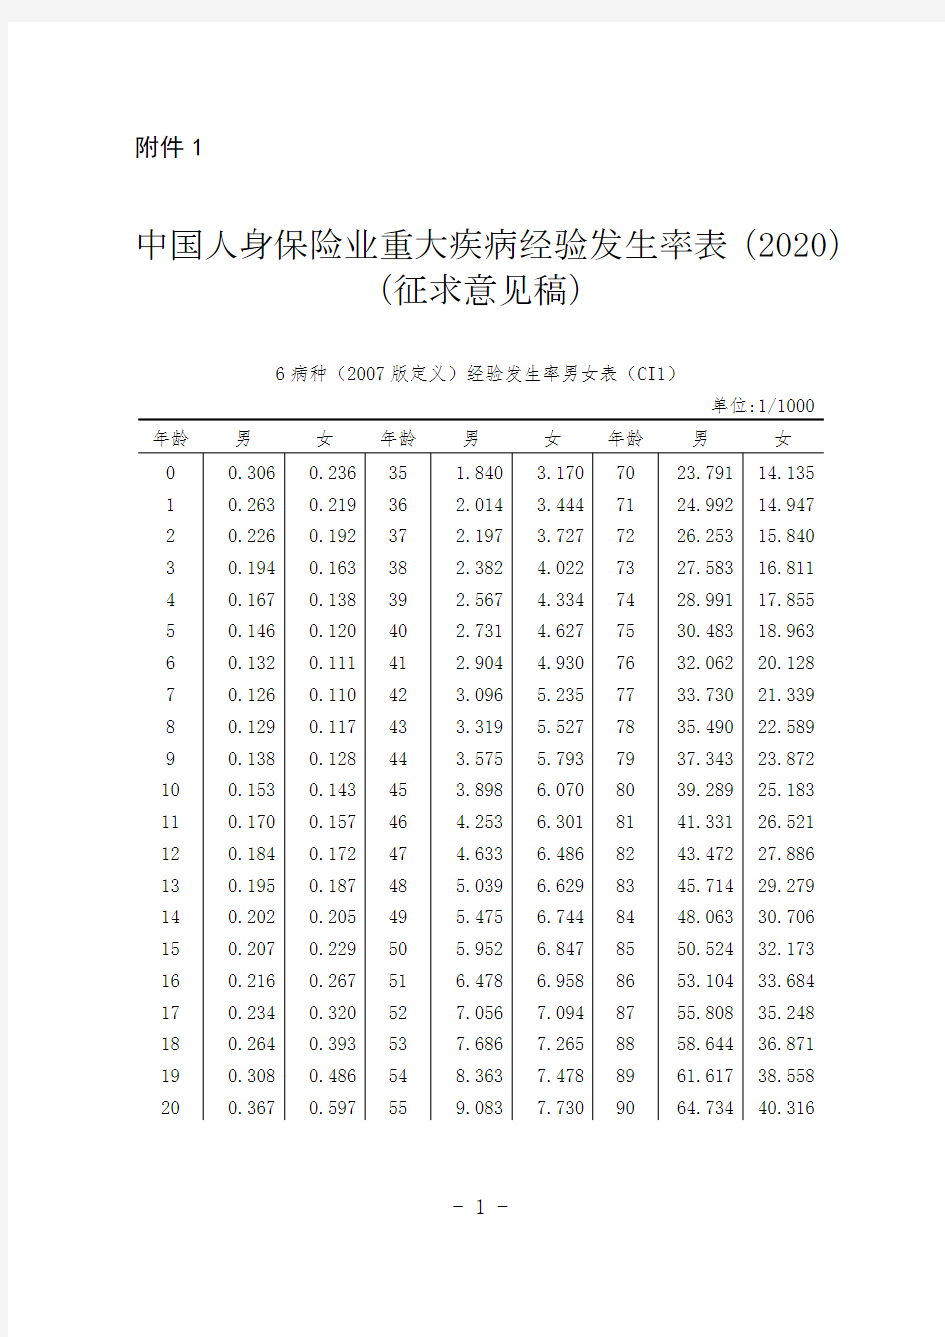 中国人身保险业重大疾病经验发生率表(2020)(征求意见稿)_1(2007版定义)